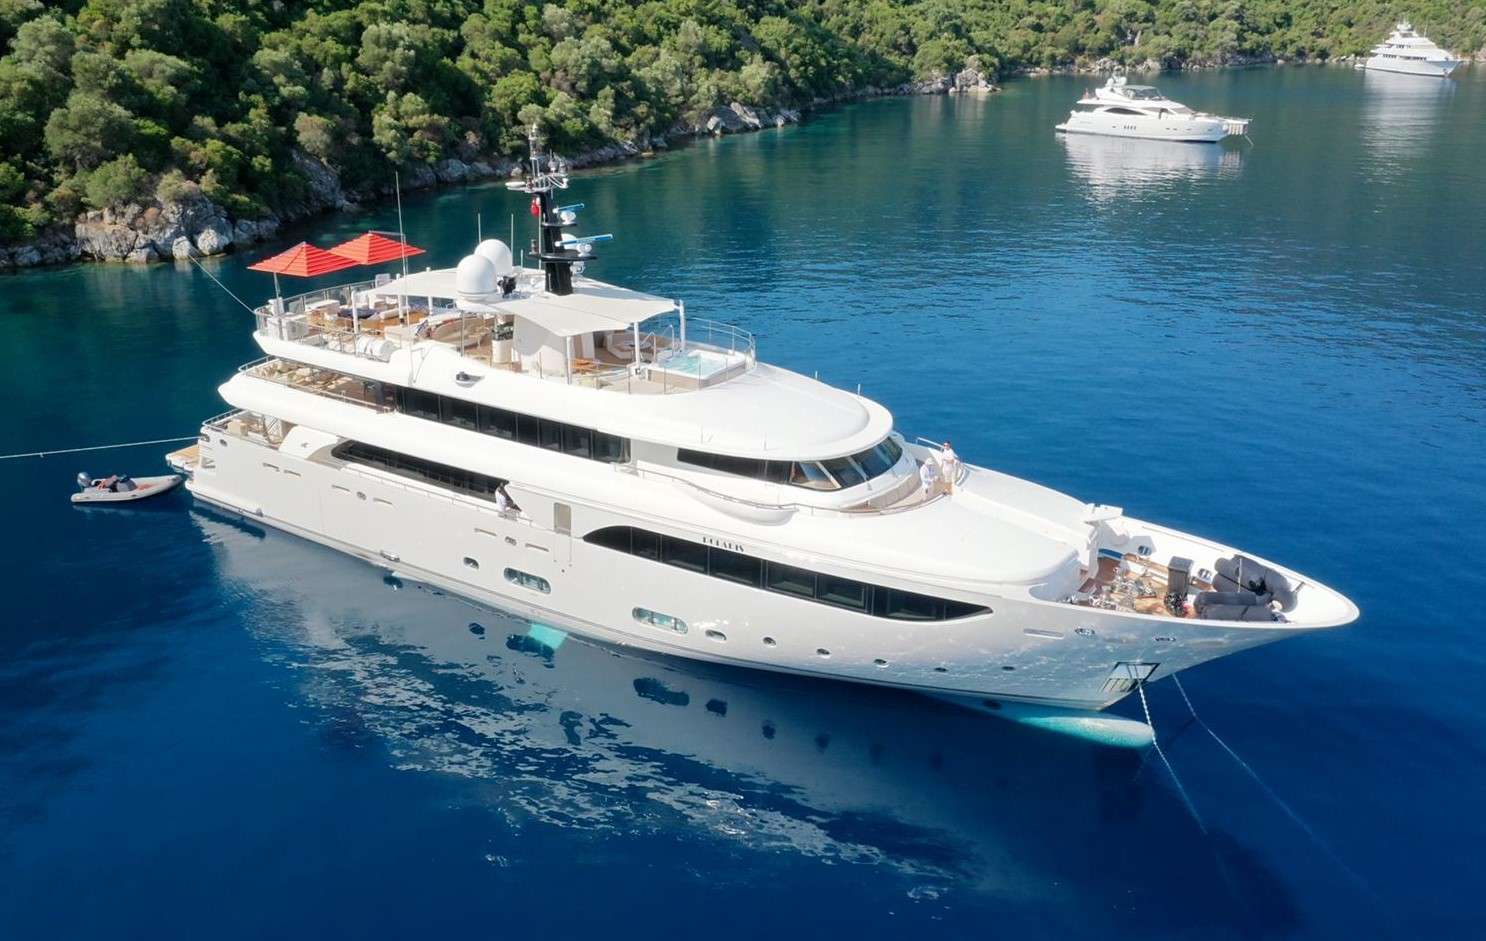 POLARIS - Yacht Charter Ploče & Boat hire in Croatia, Greece, Turkey 1